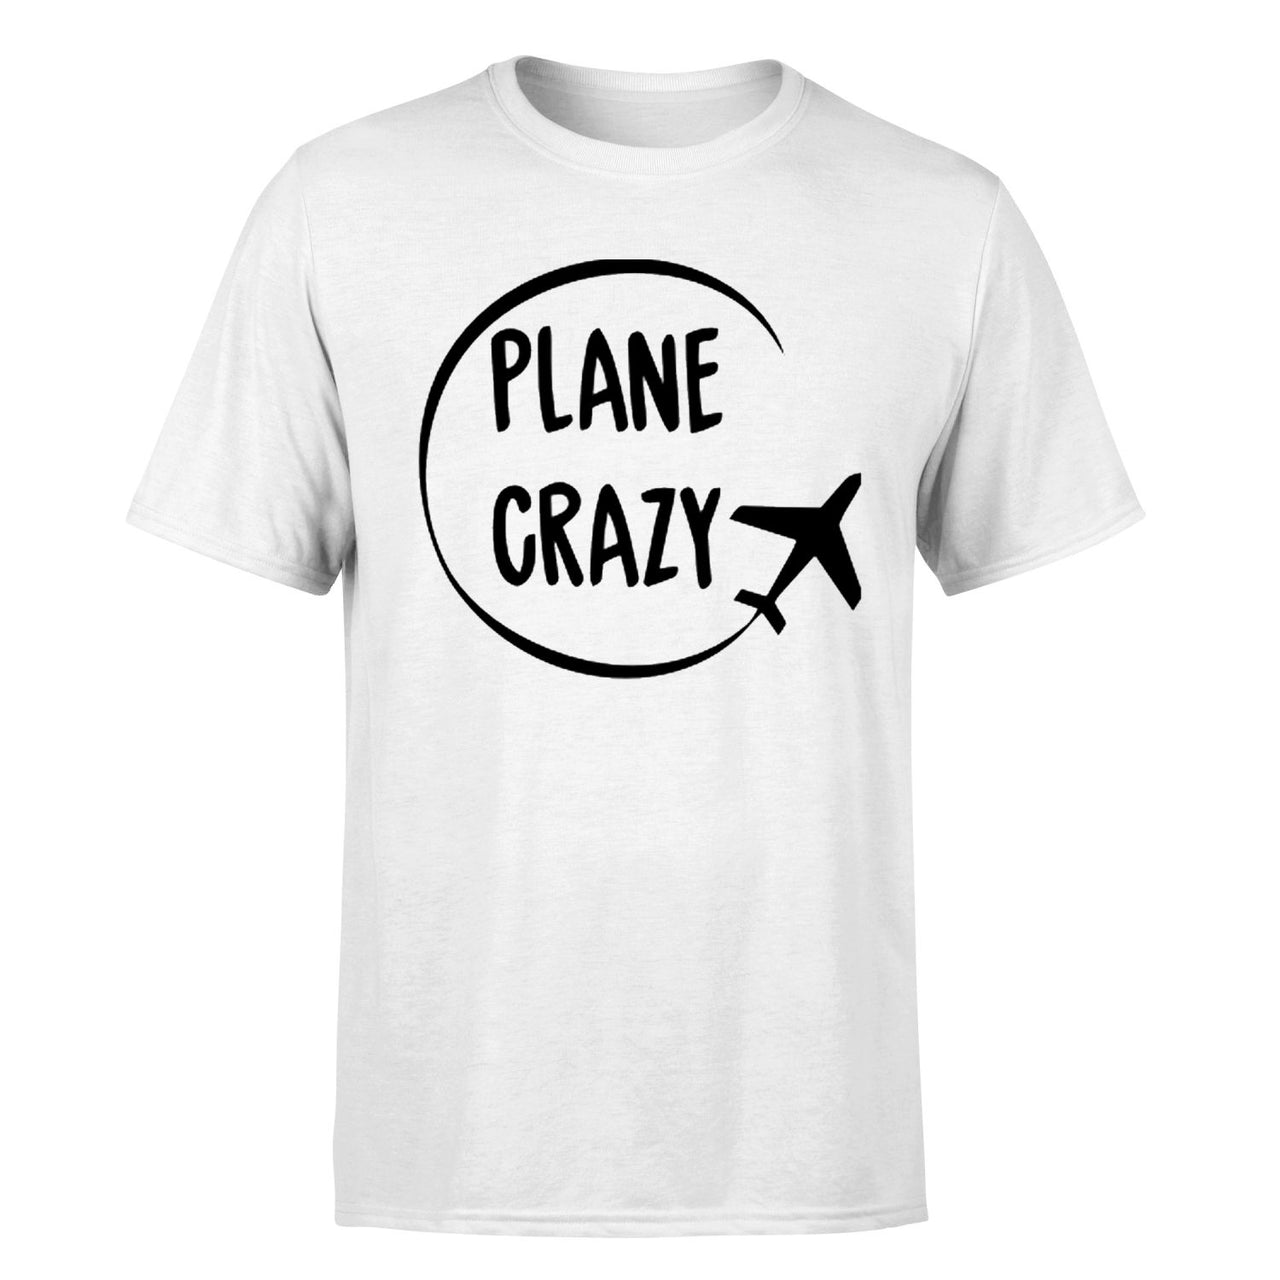 Plane Crazy Designed T-Shirts